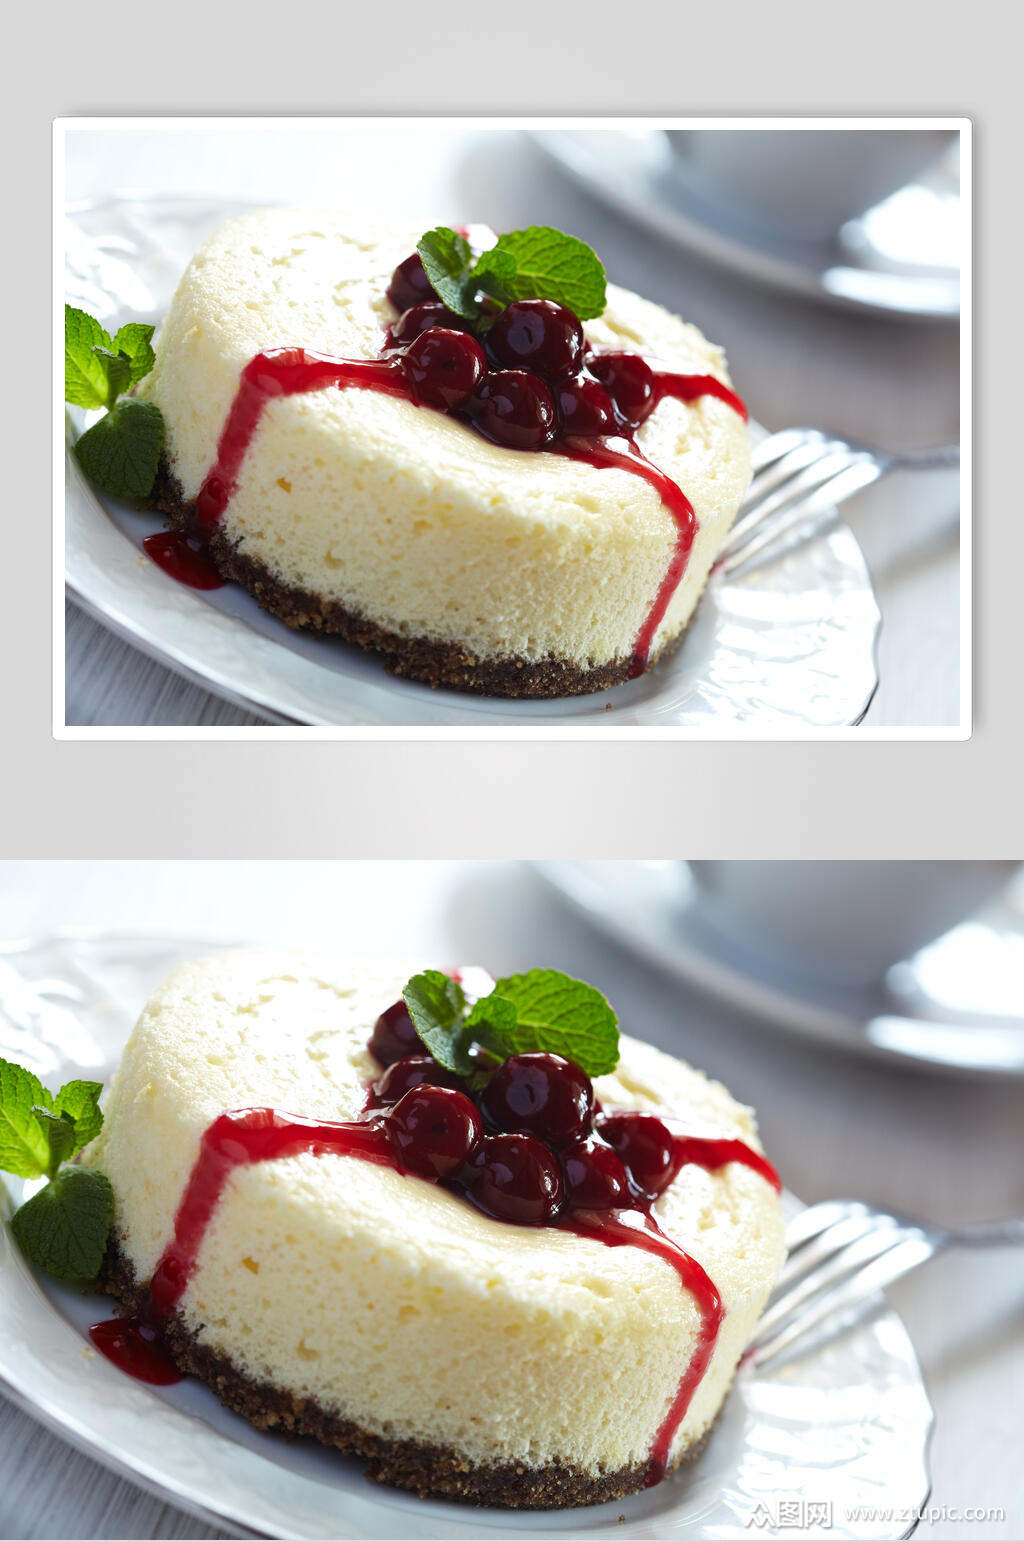 招牌红豆生日蛋糕食物图片素材